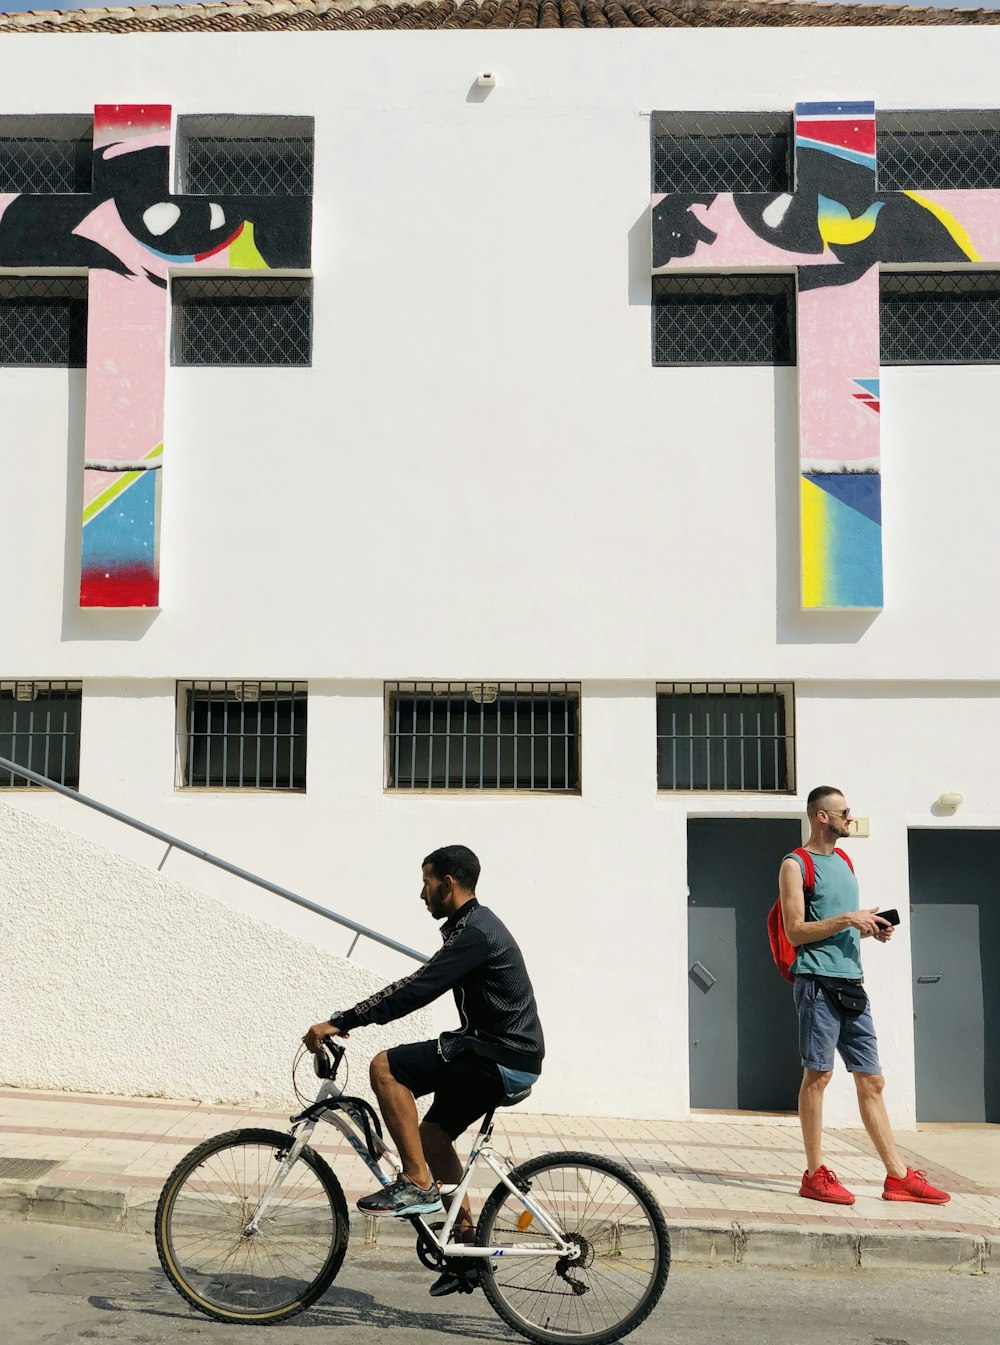 Un homme à vélo dans une rue à côté d’un grand immeuble